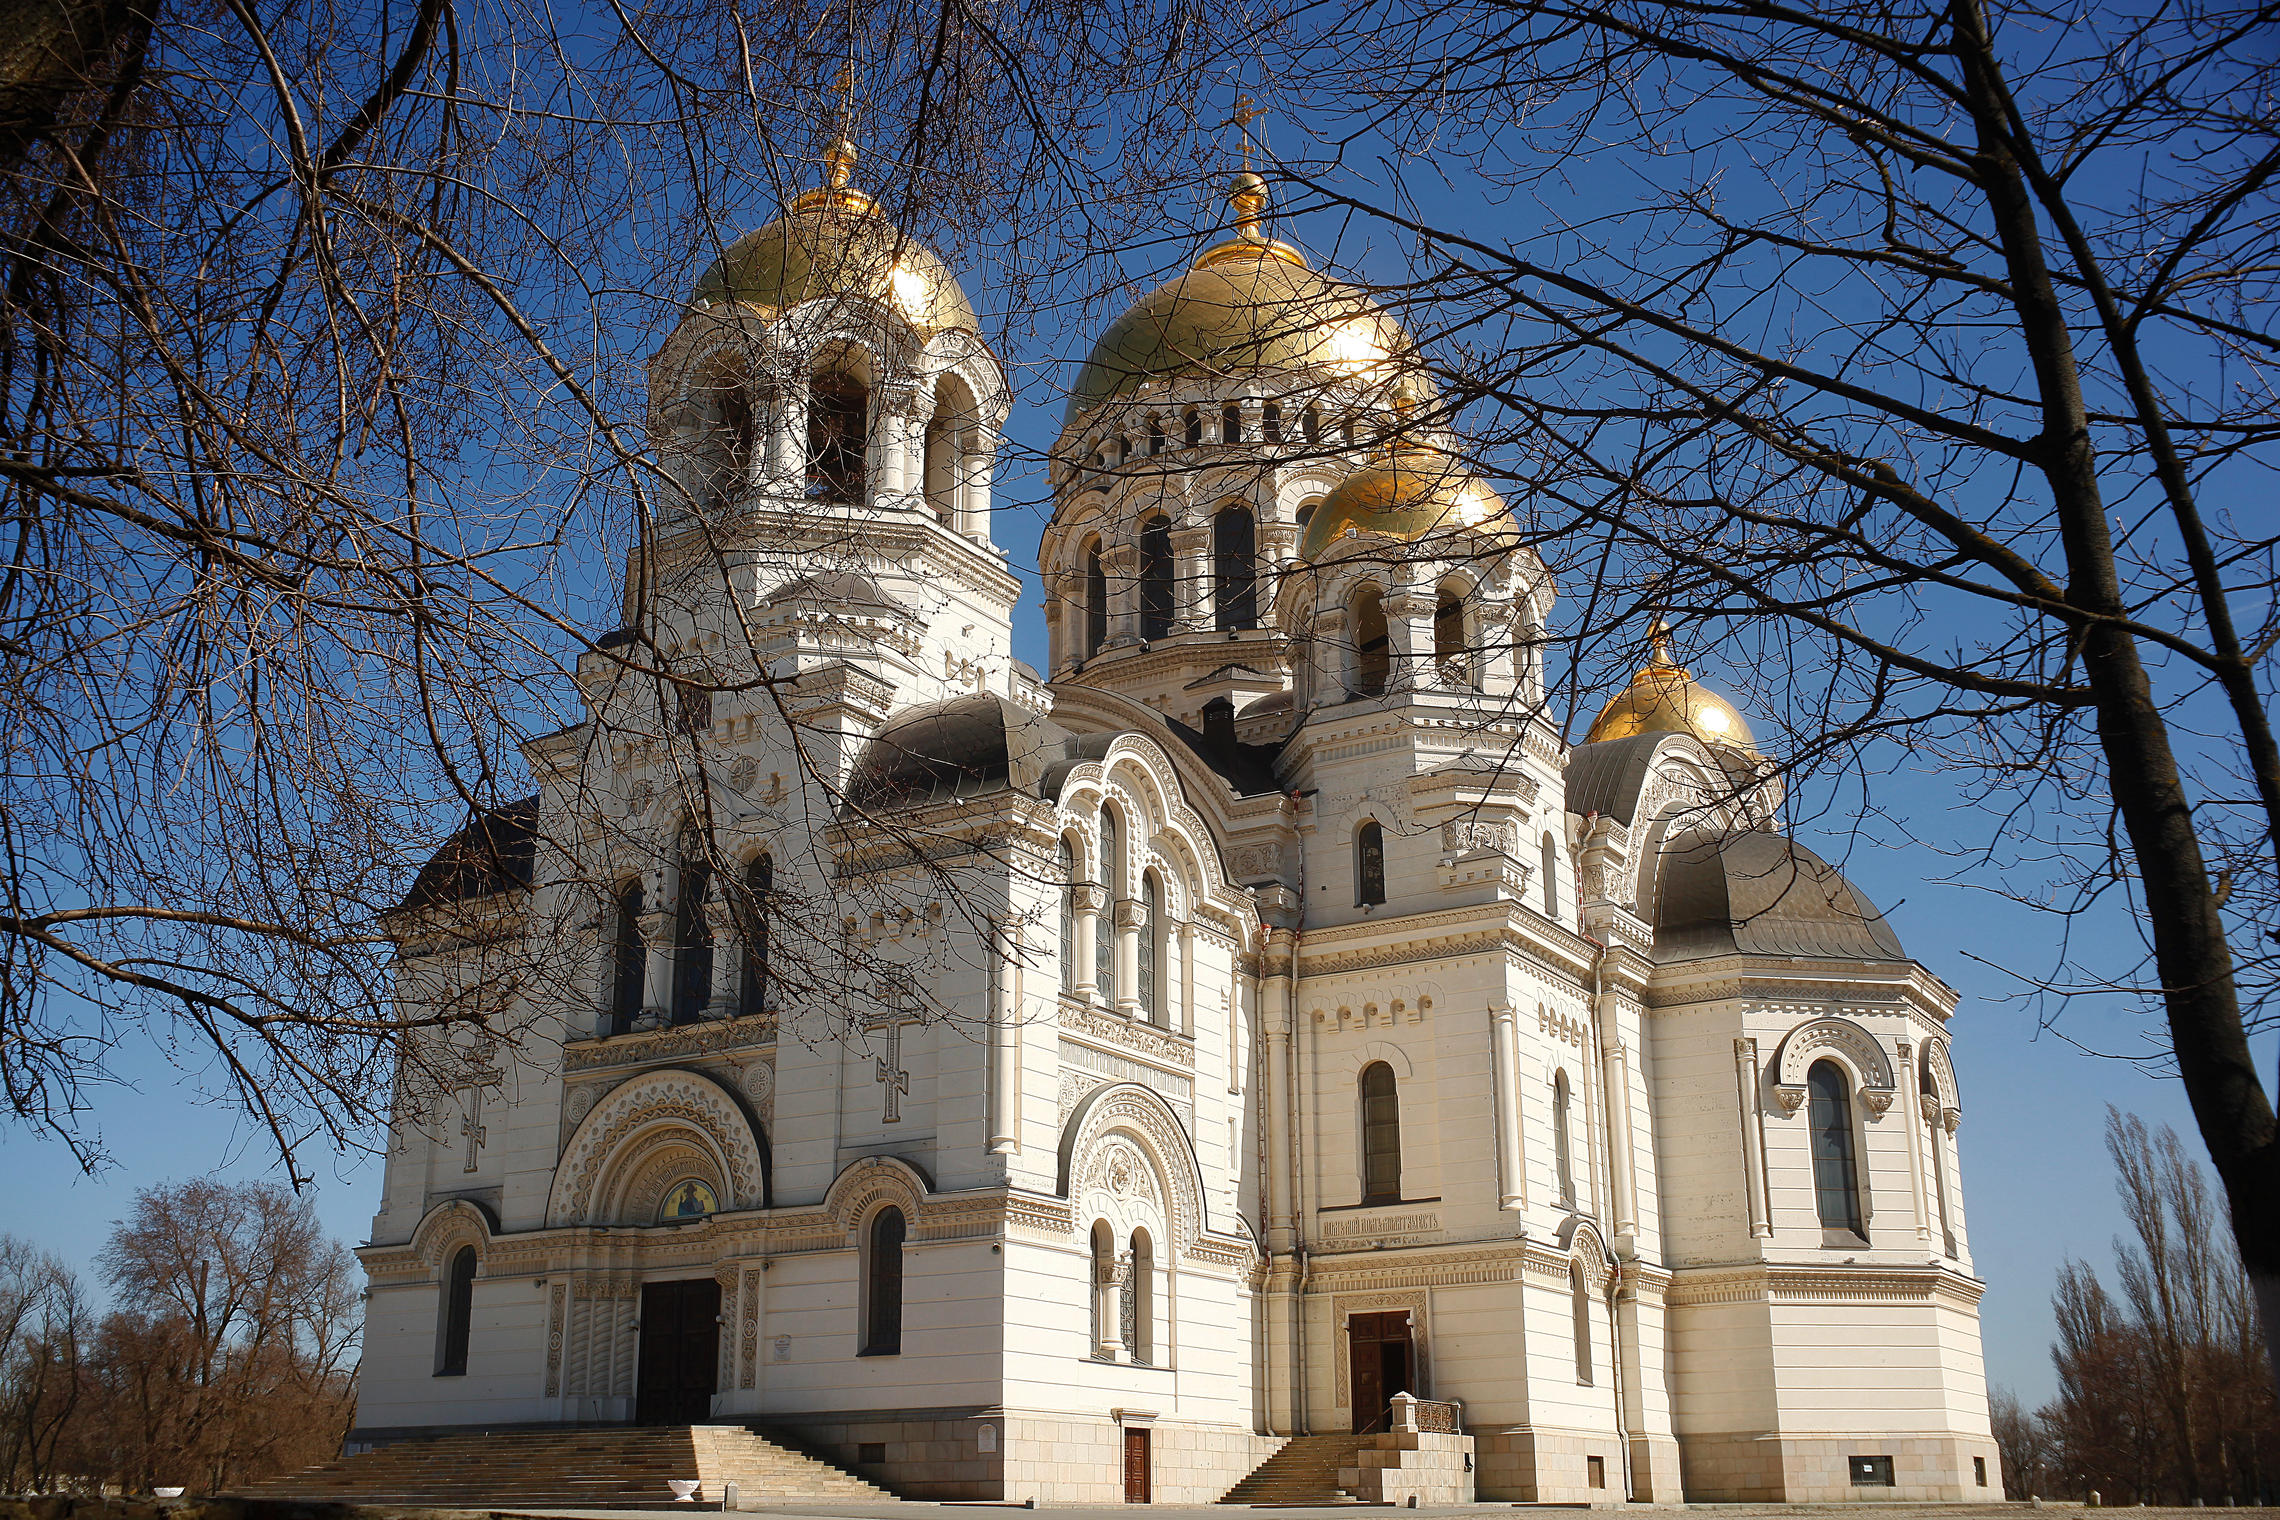 Новочеркасский Свято-Вознесенский кафедральный собор